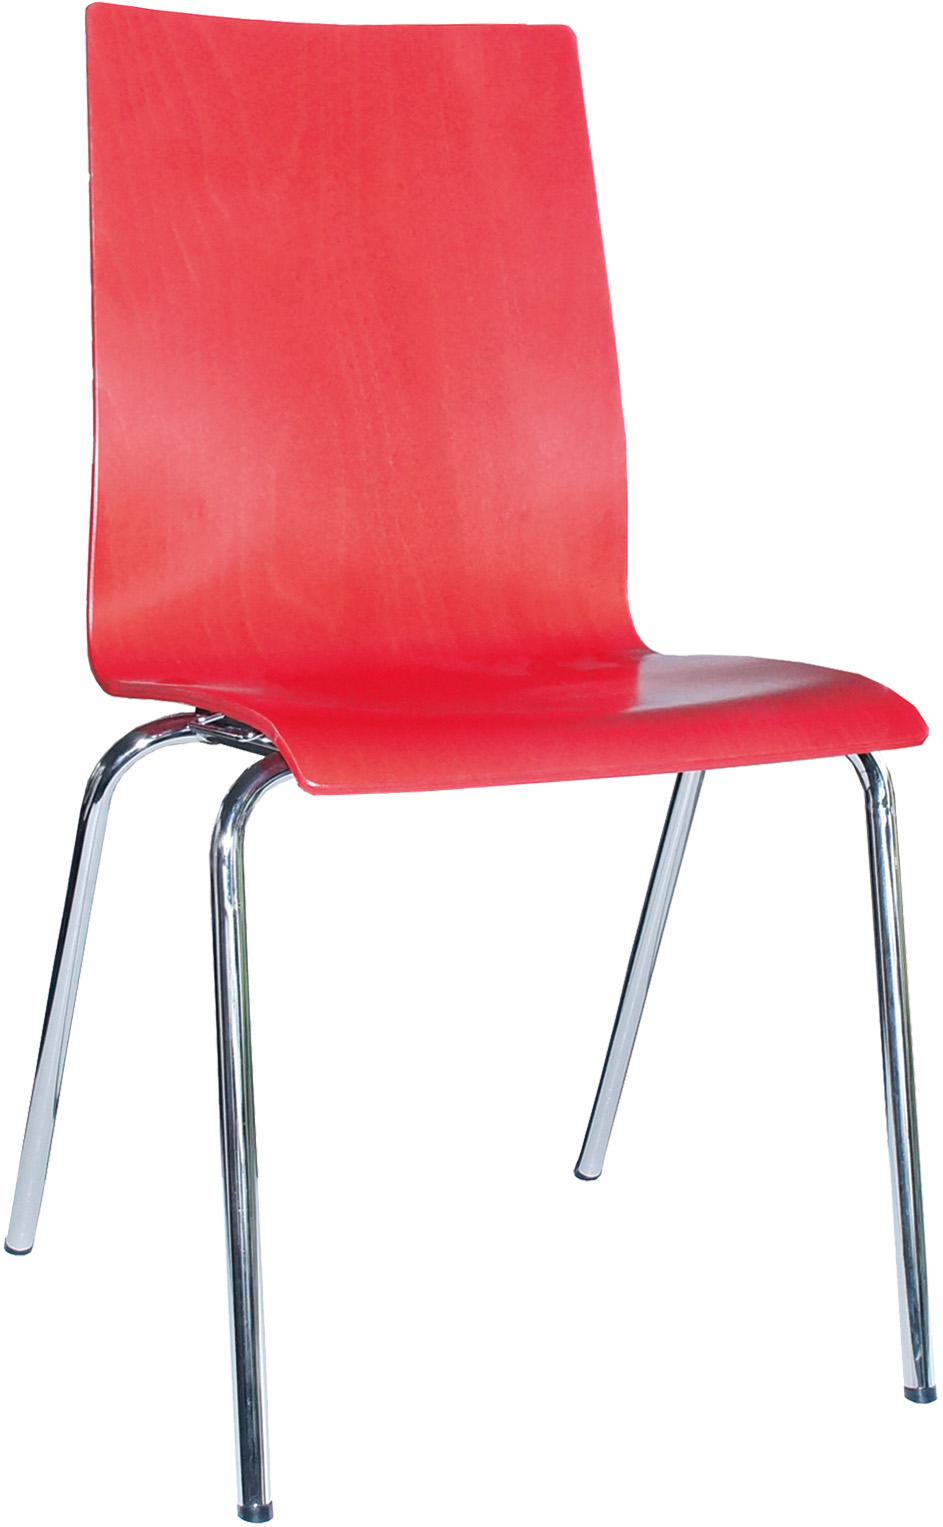 Farbige Stühle: blau, grün, gelb, rot - MEGA-reduziert (Stapelstühle, kombinierbar, in Reihen verbindbar)